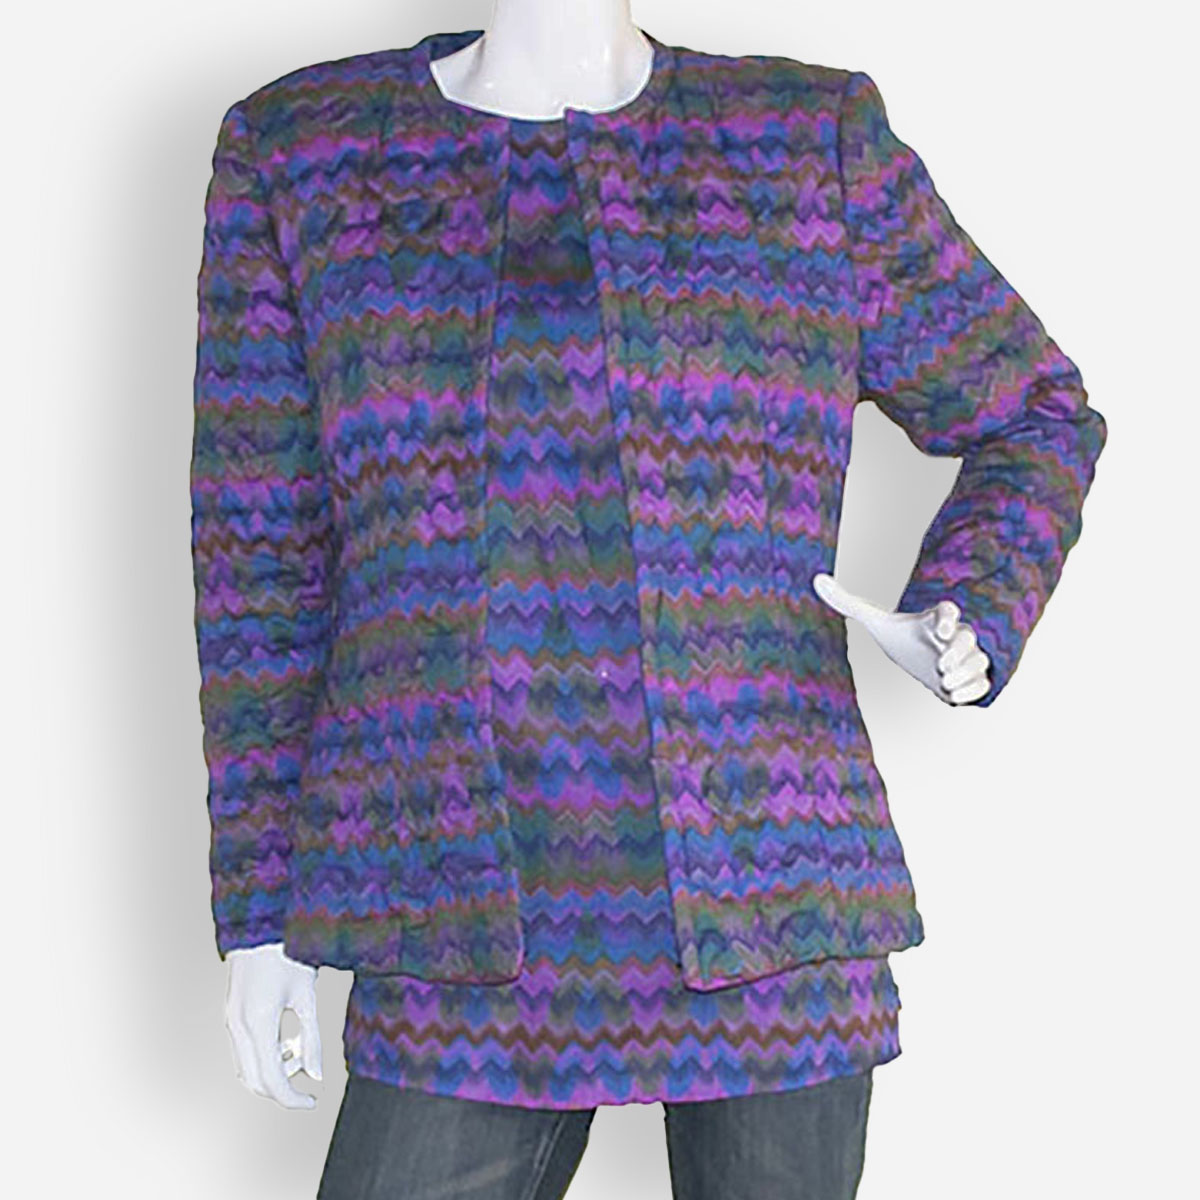 Flame stitch pattern jacket